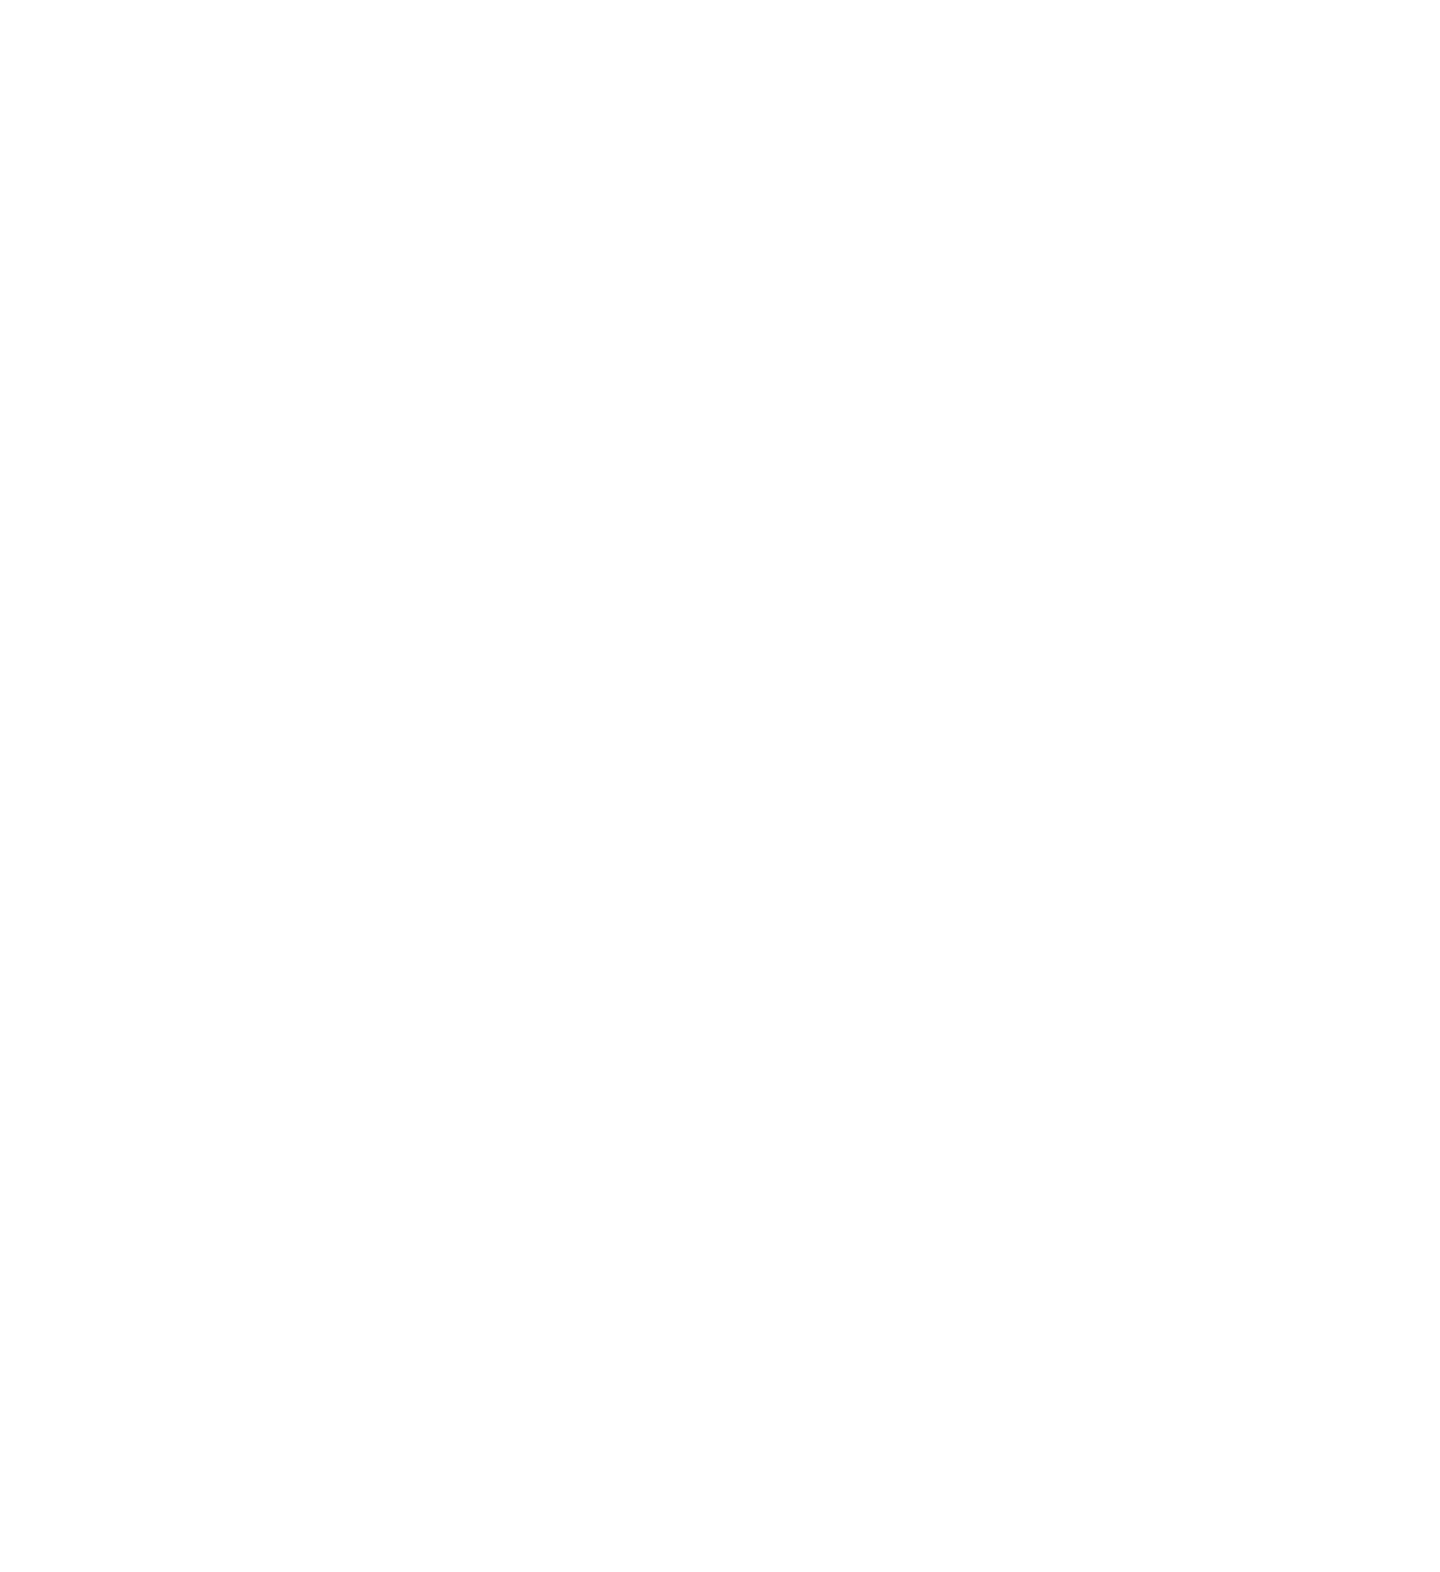 AFG logo - lion figure